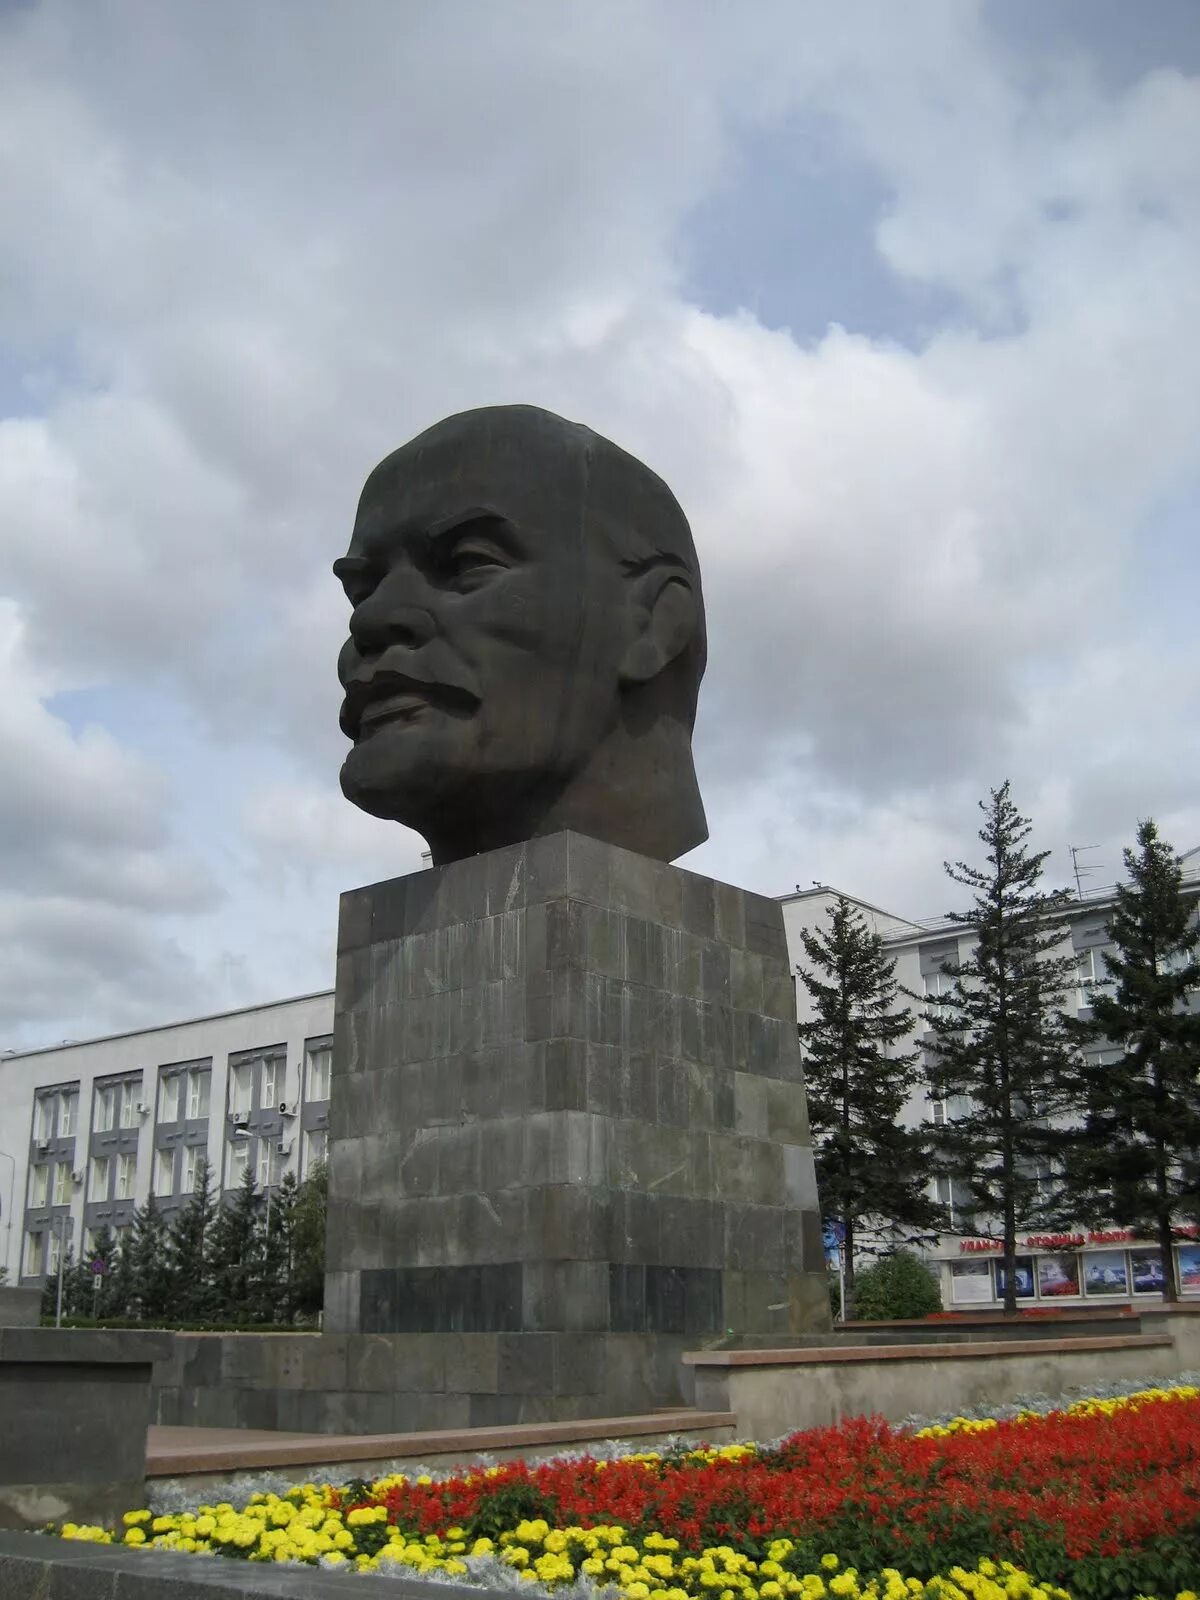 Ленин в улан. Голова Ленина в Улан-Удэ. Улану де голова Ленина. Памятник голова Ленина в Улан-Удэ. Голова Ленина Улан-Удэ вид сбоку.